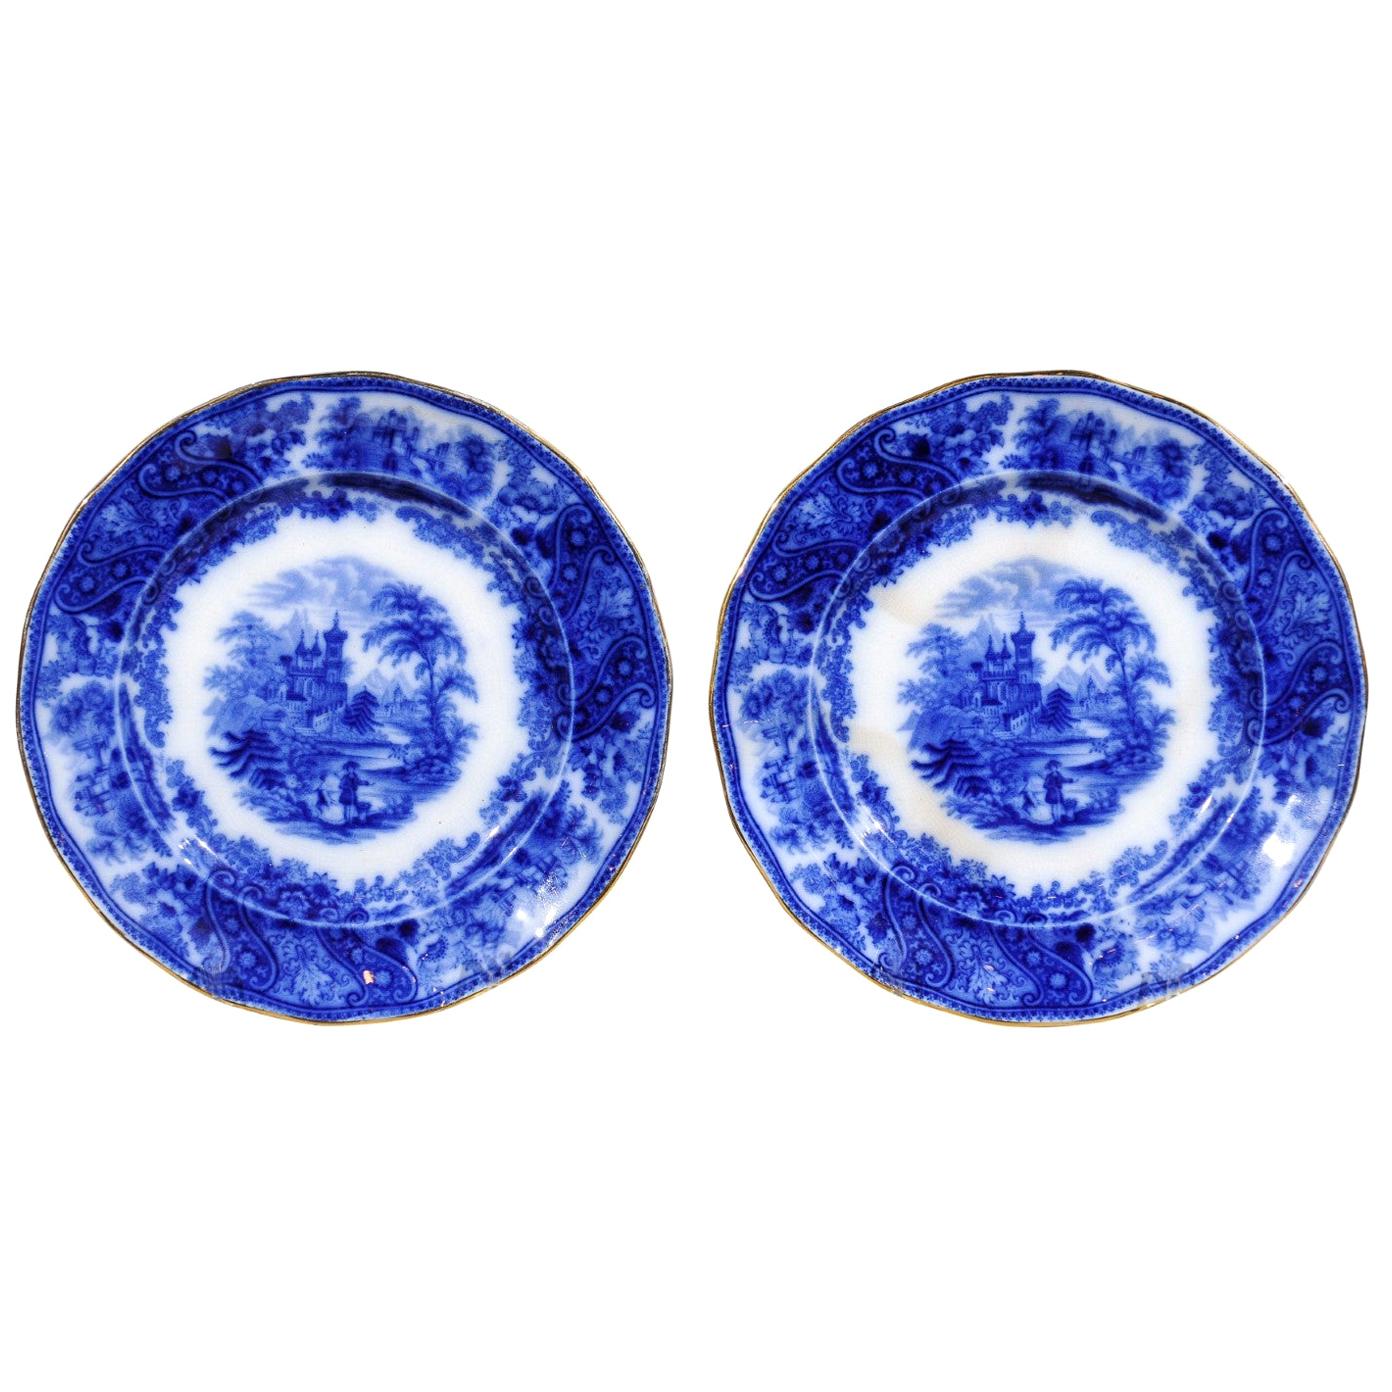 Deux assiettes Middleport anglaises Burgess & Leigh avec motifs nonpareils bleus scintillants